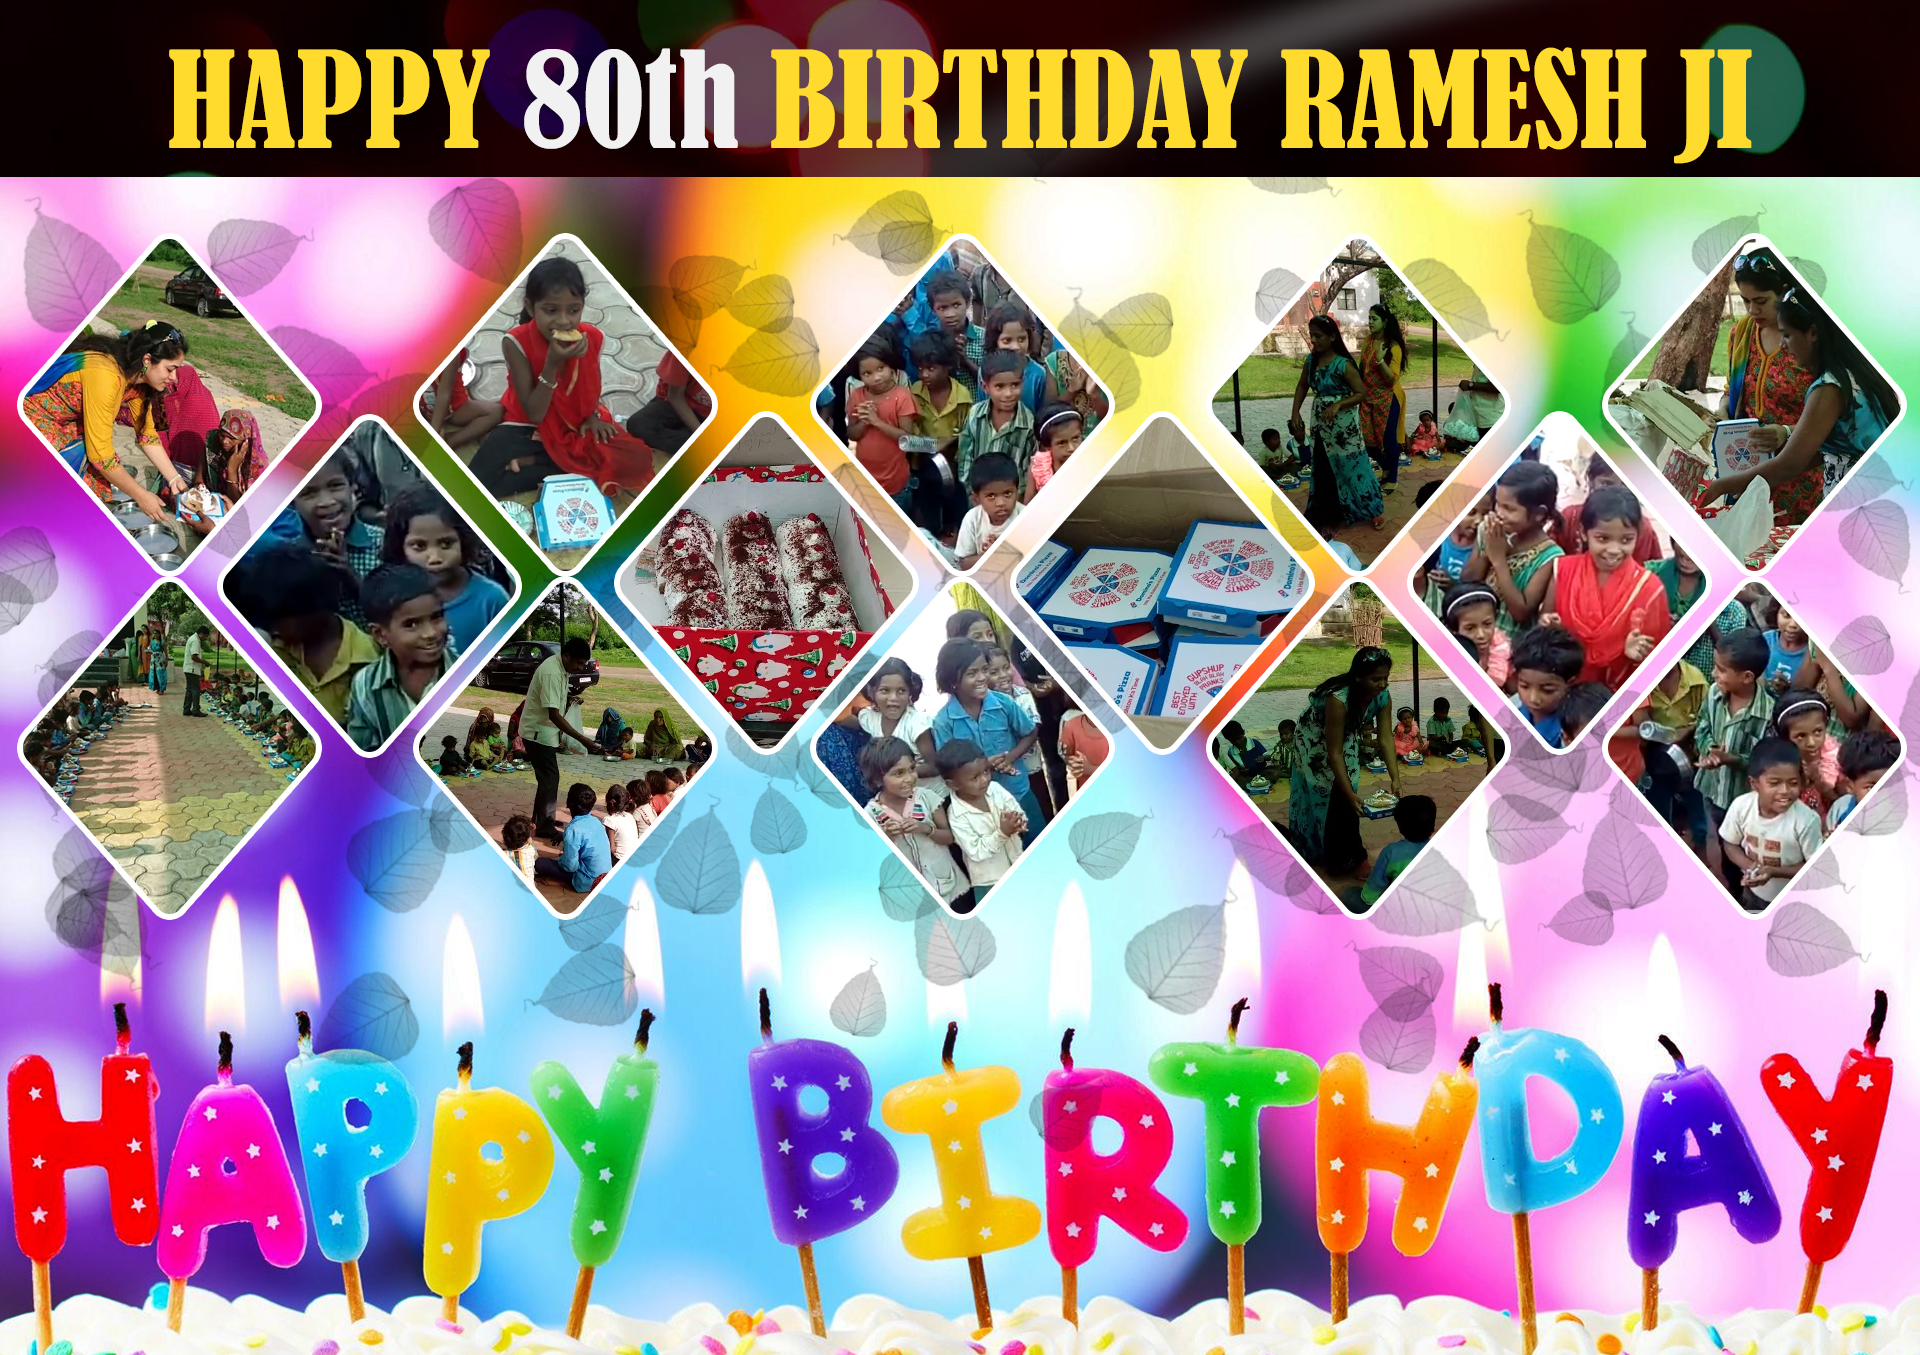 RameshJi-birthday-cake